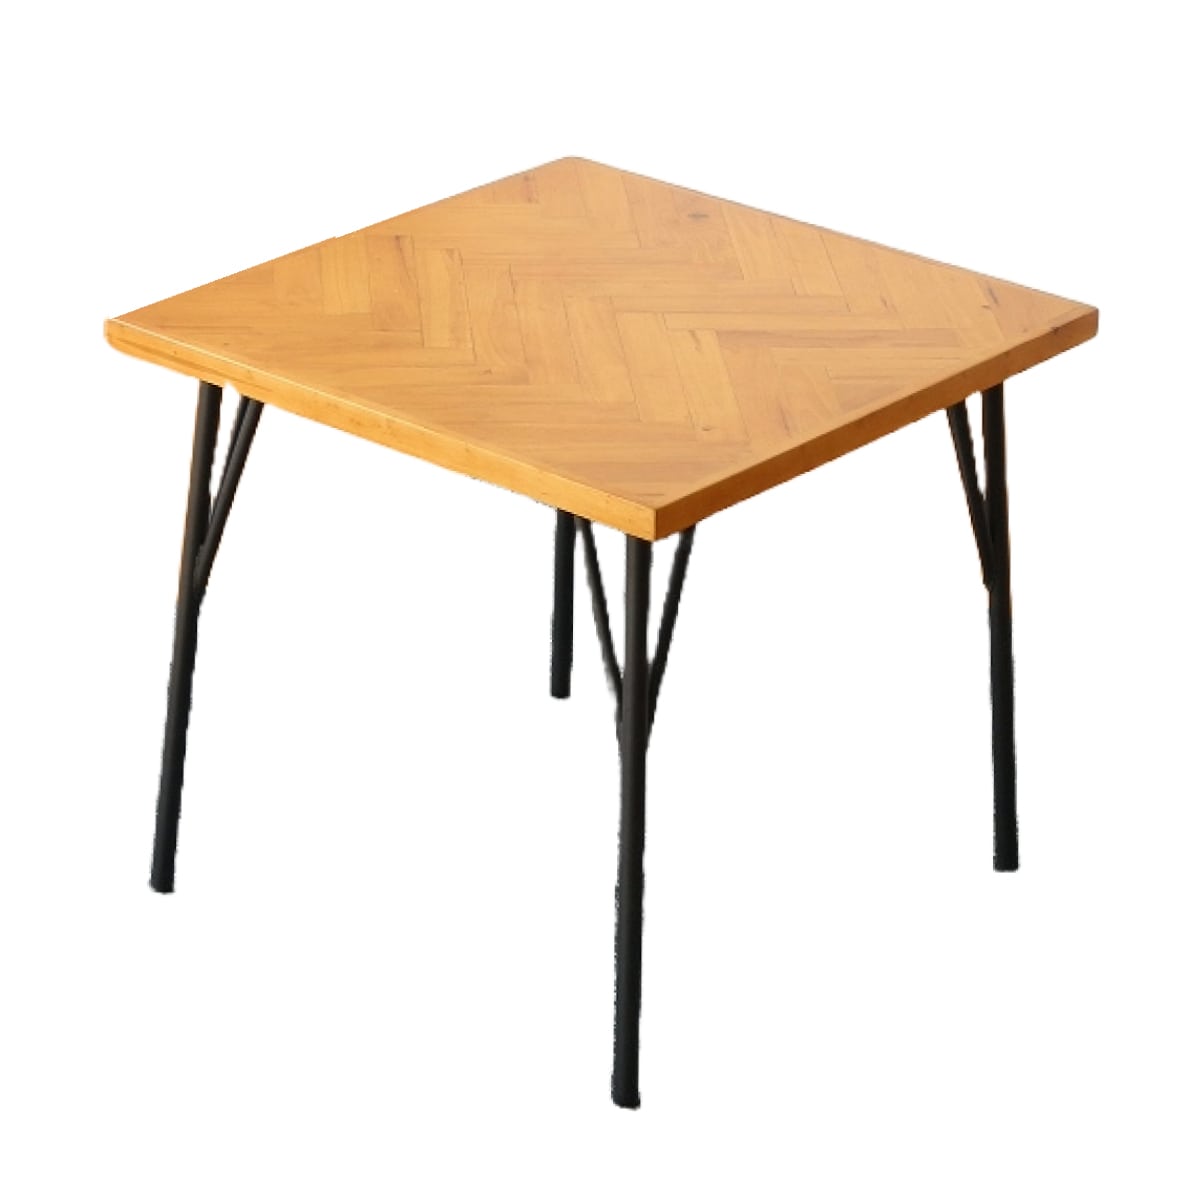 ブランド登録なし ダイニングテーブル 幅130 木製テーブル ヘリンボーン柄 寄木柄 天然木 北欧風 カフェテーブル 喫茶店 コーヒーテーブル M5-MGKKE00161